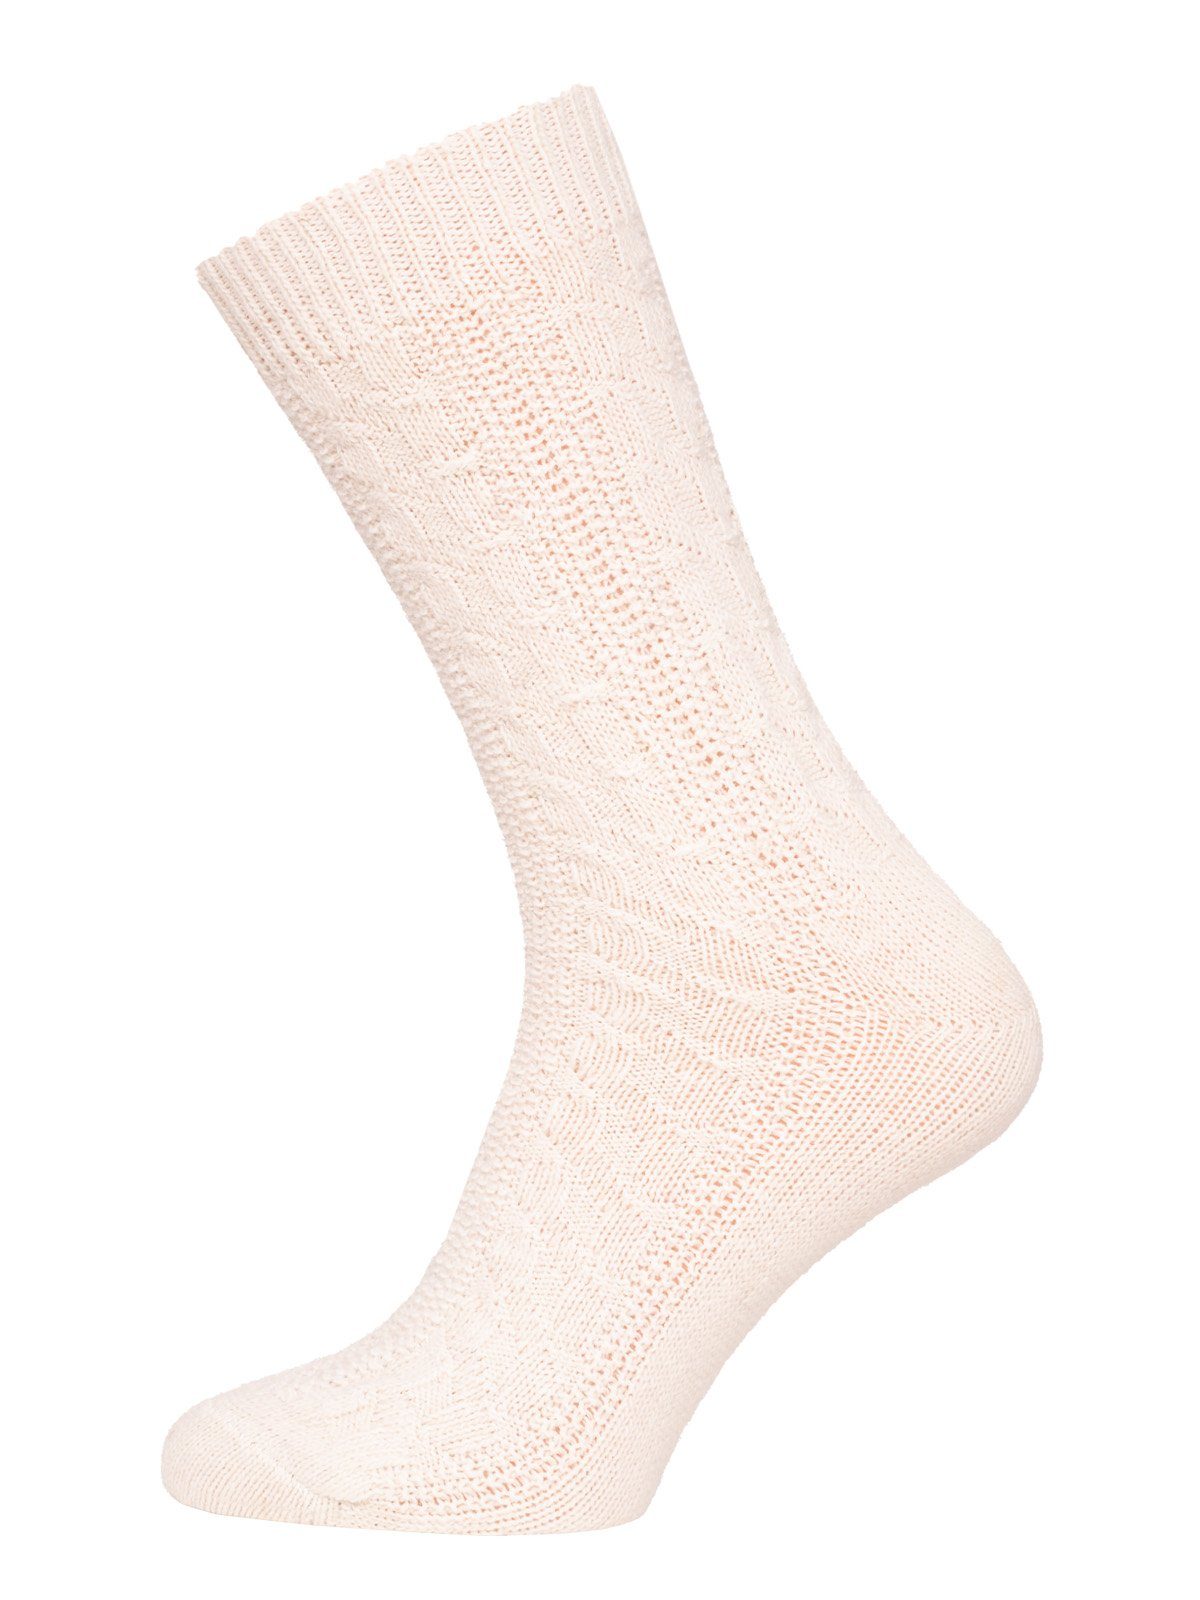 HomeOfSocks Socken 70% Lammwolle Socks Zopfmuster Wollsocken Extra Warm (Paar, 1 Paar) Feine und strapazierfähige Lambswool Wollsocken Creme